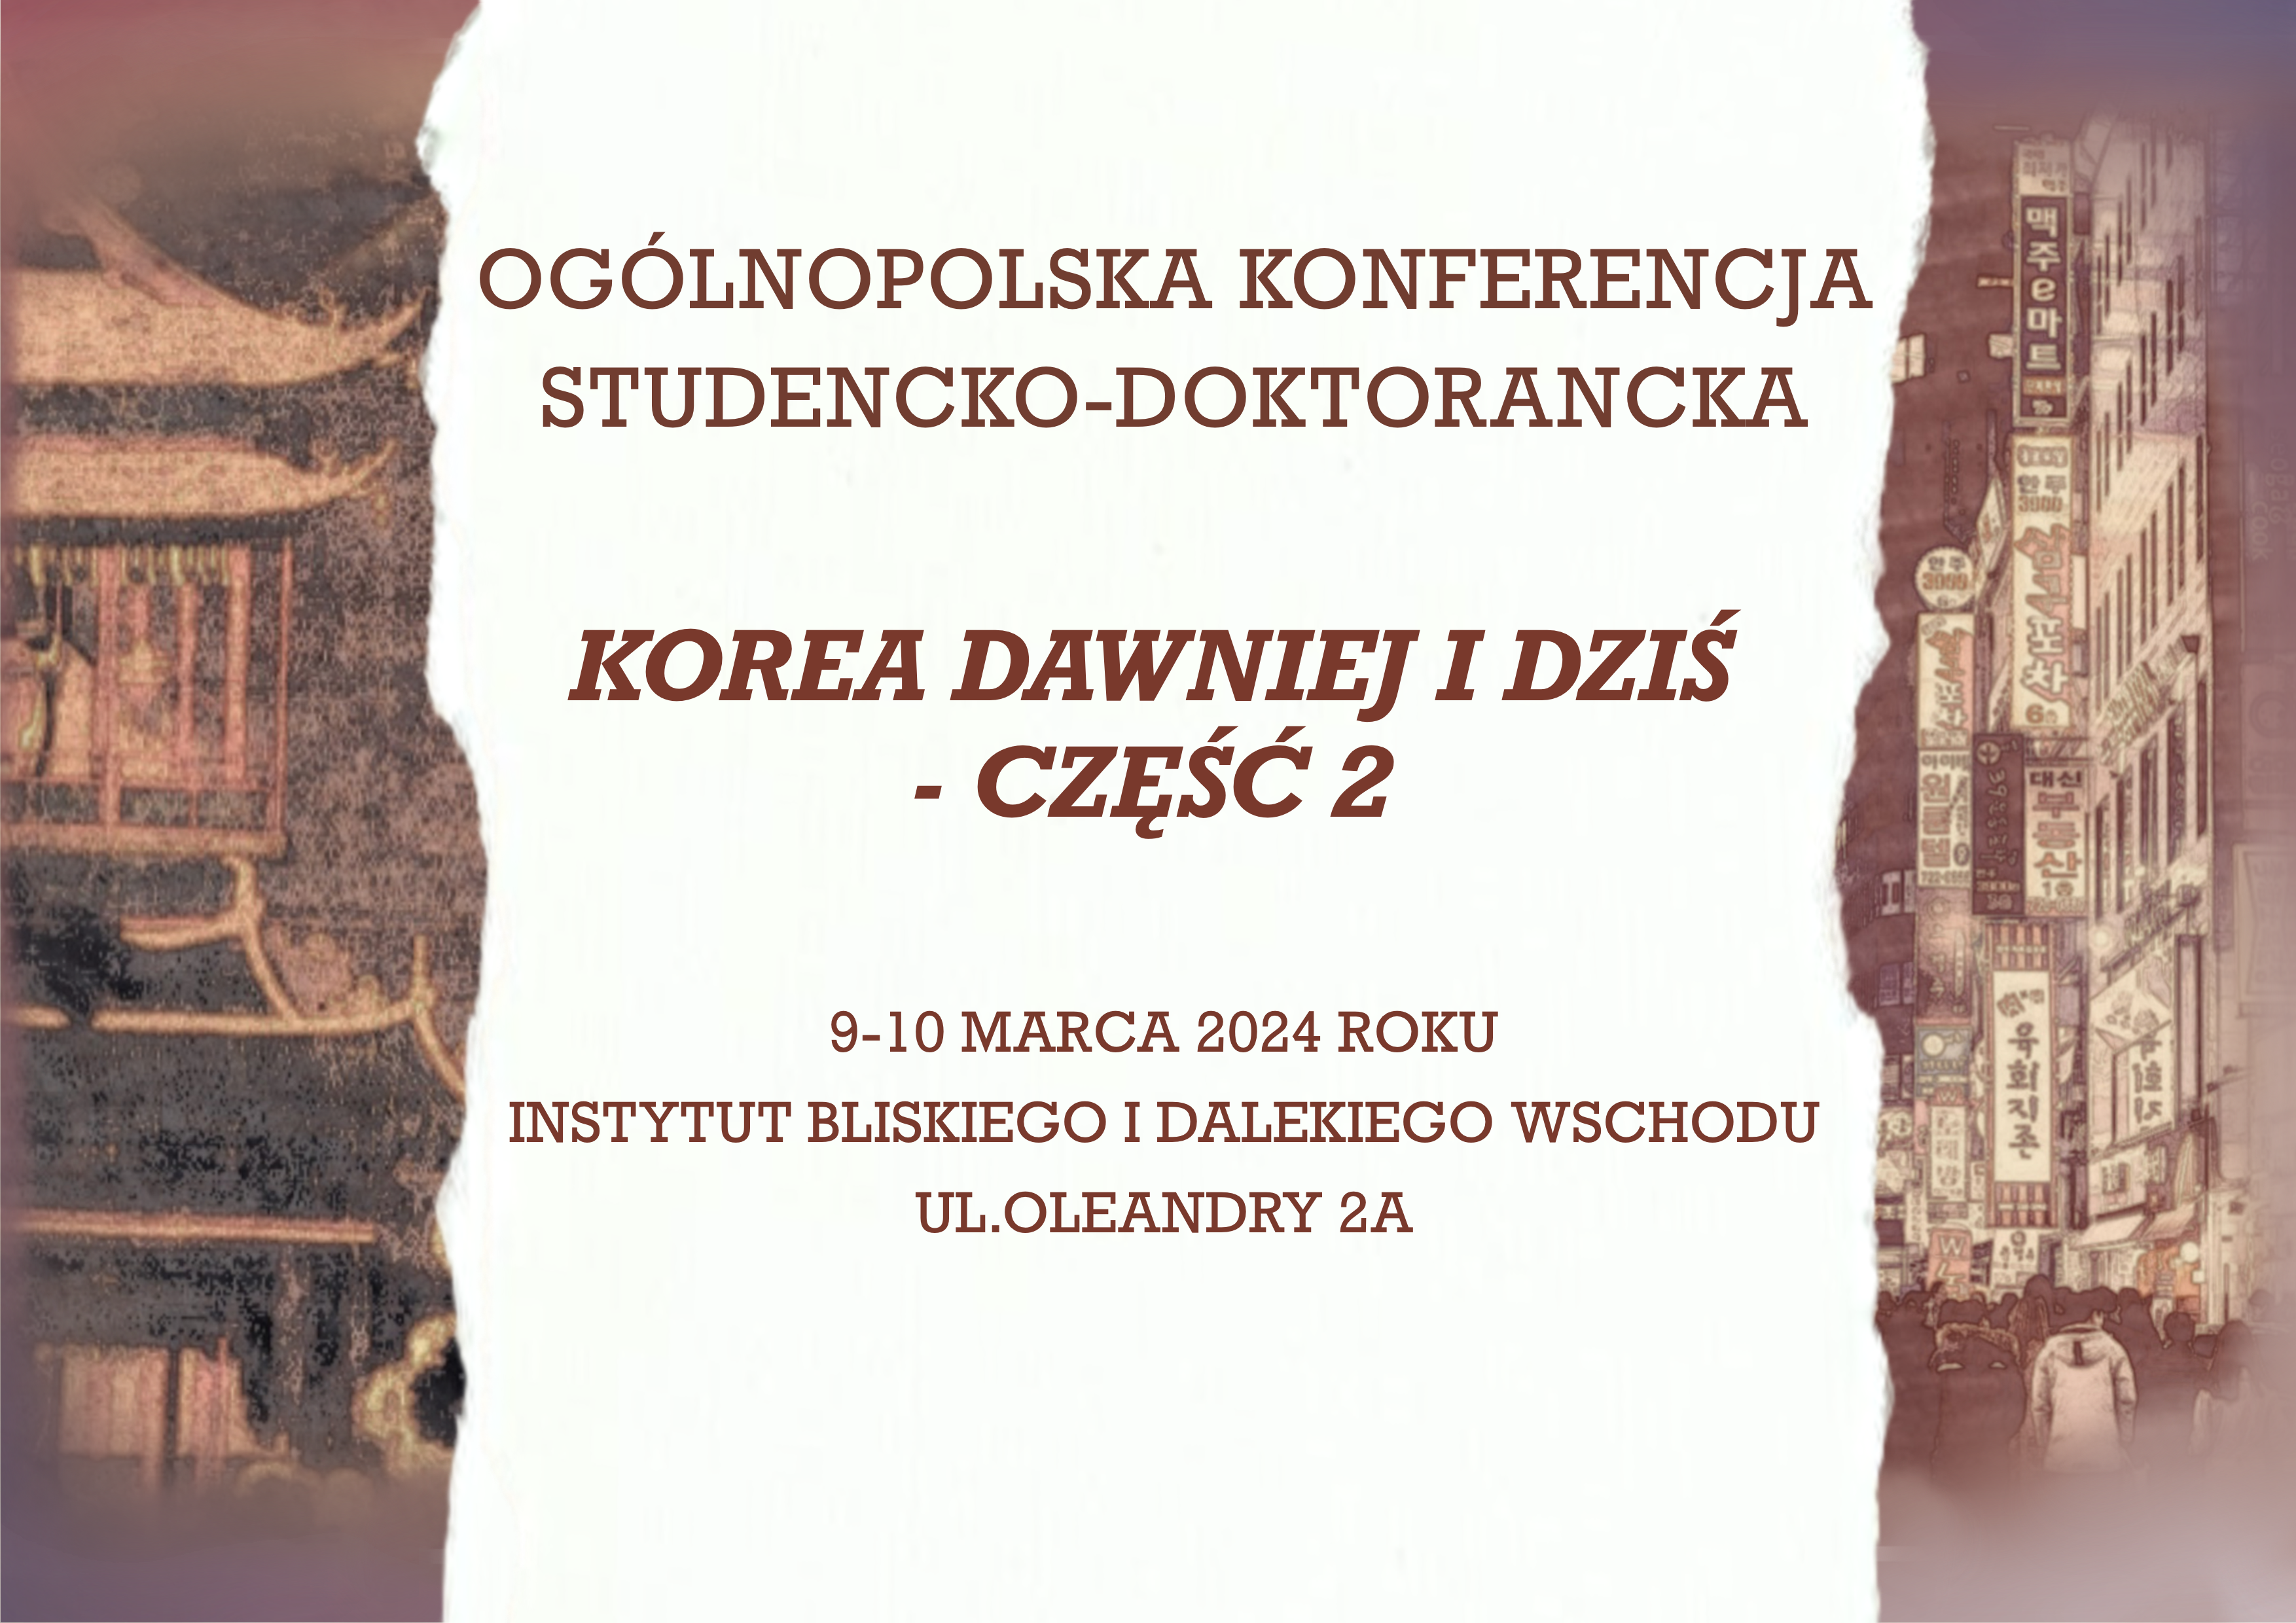 Ogólnopolska Konferencja Studencko-Doktorancka  - "Korea dawniej i dziś - cześć 2"